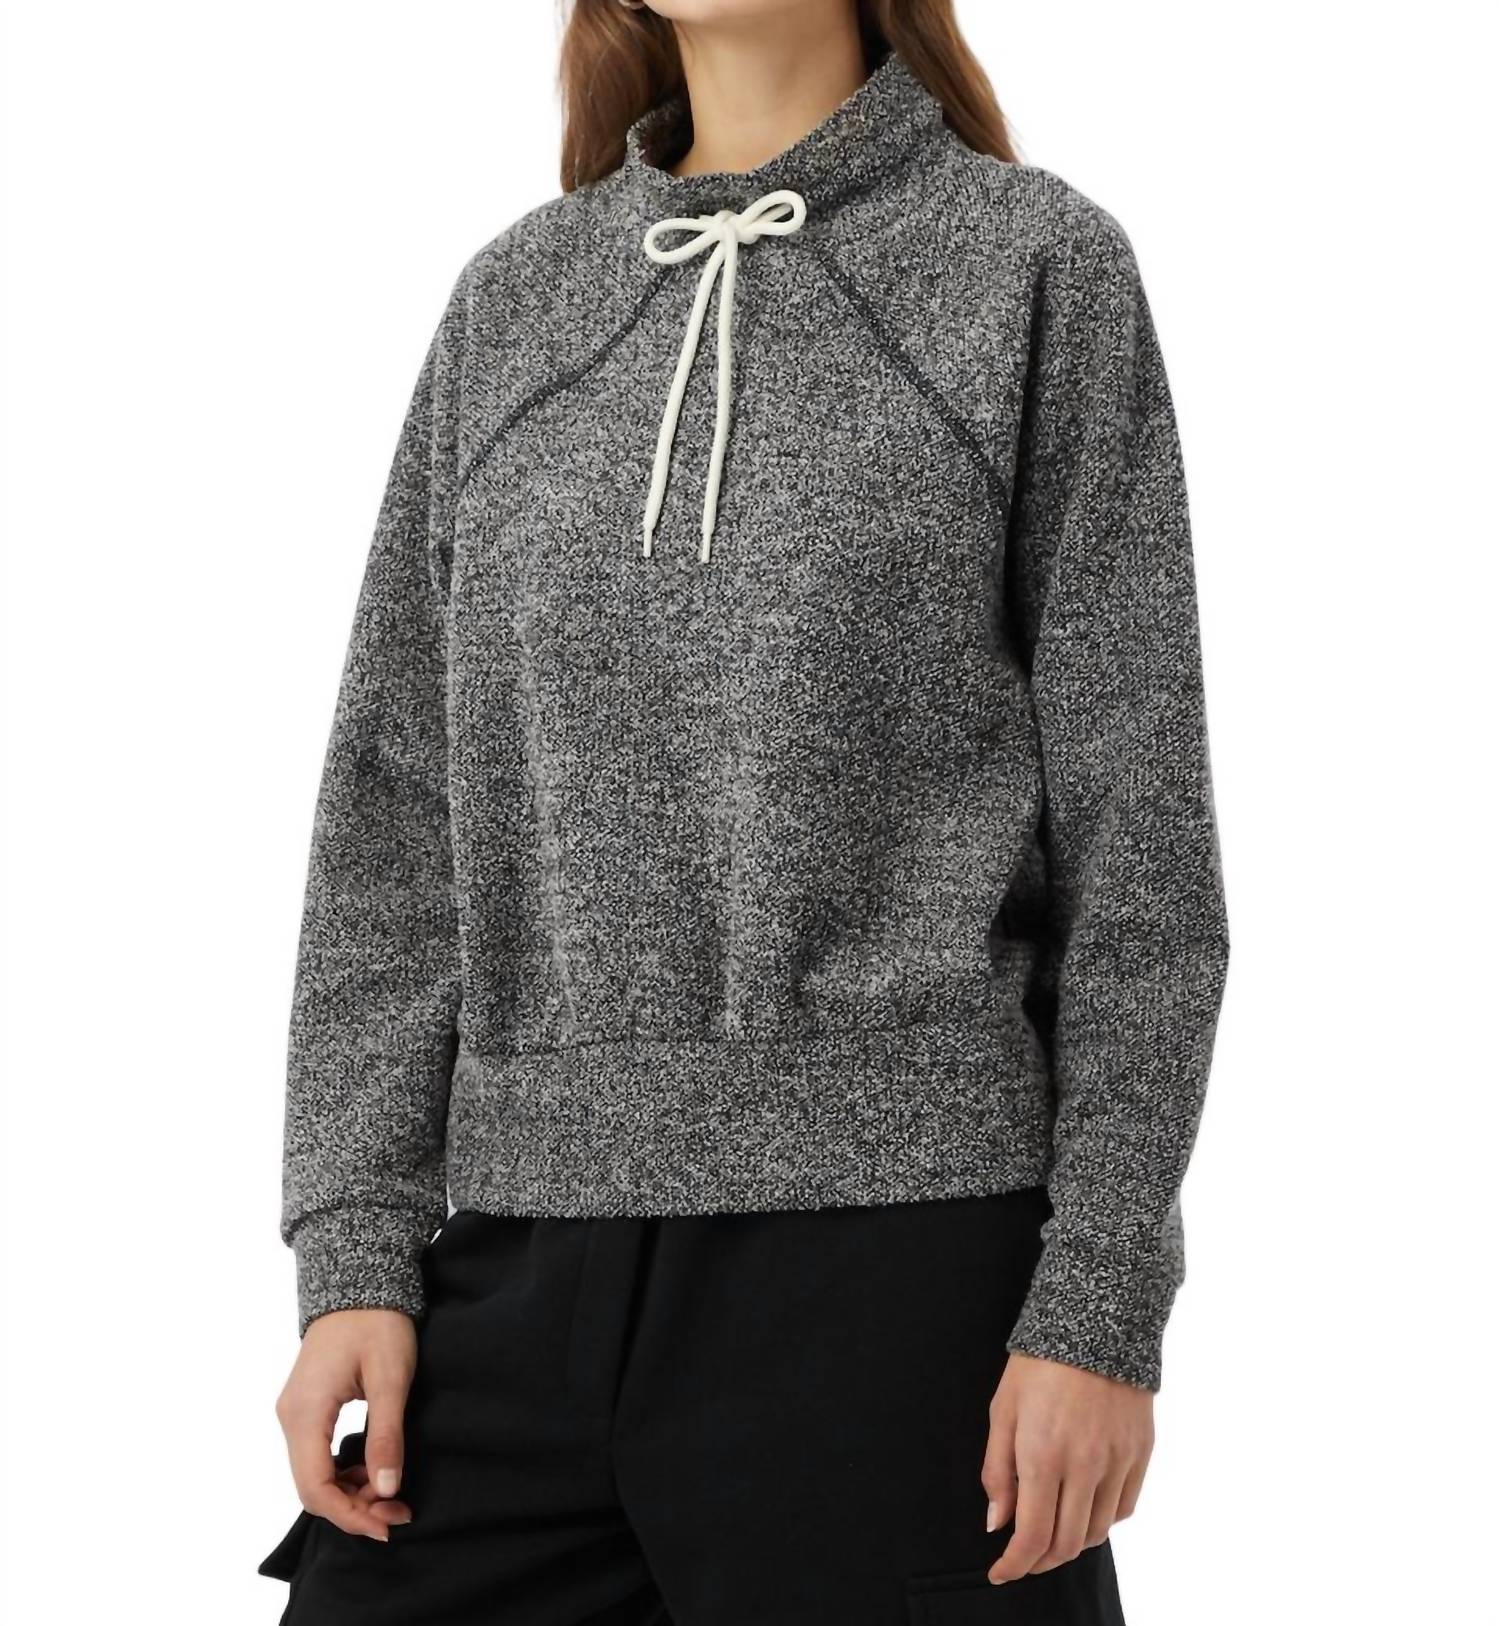 Varley Maceo Sweatshirt In Black/white In Gray